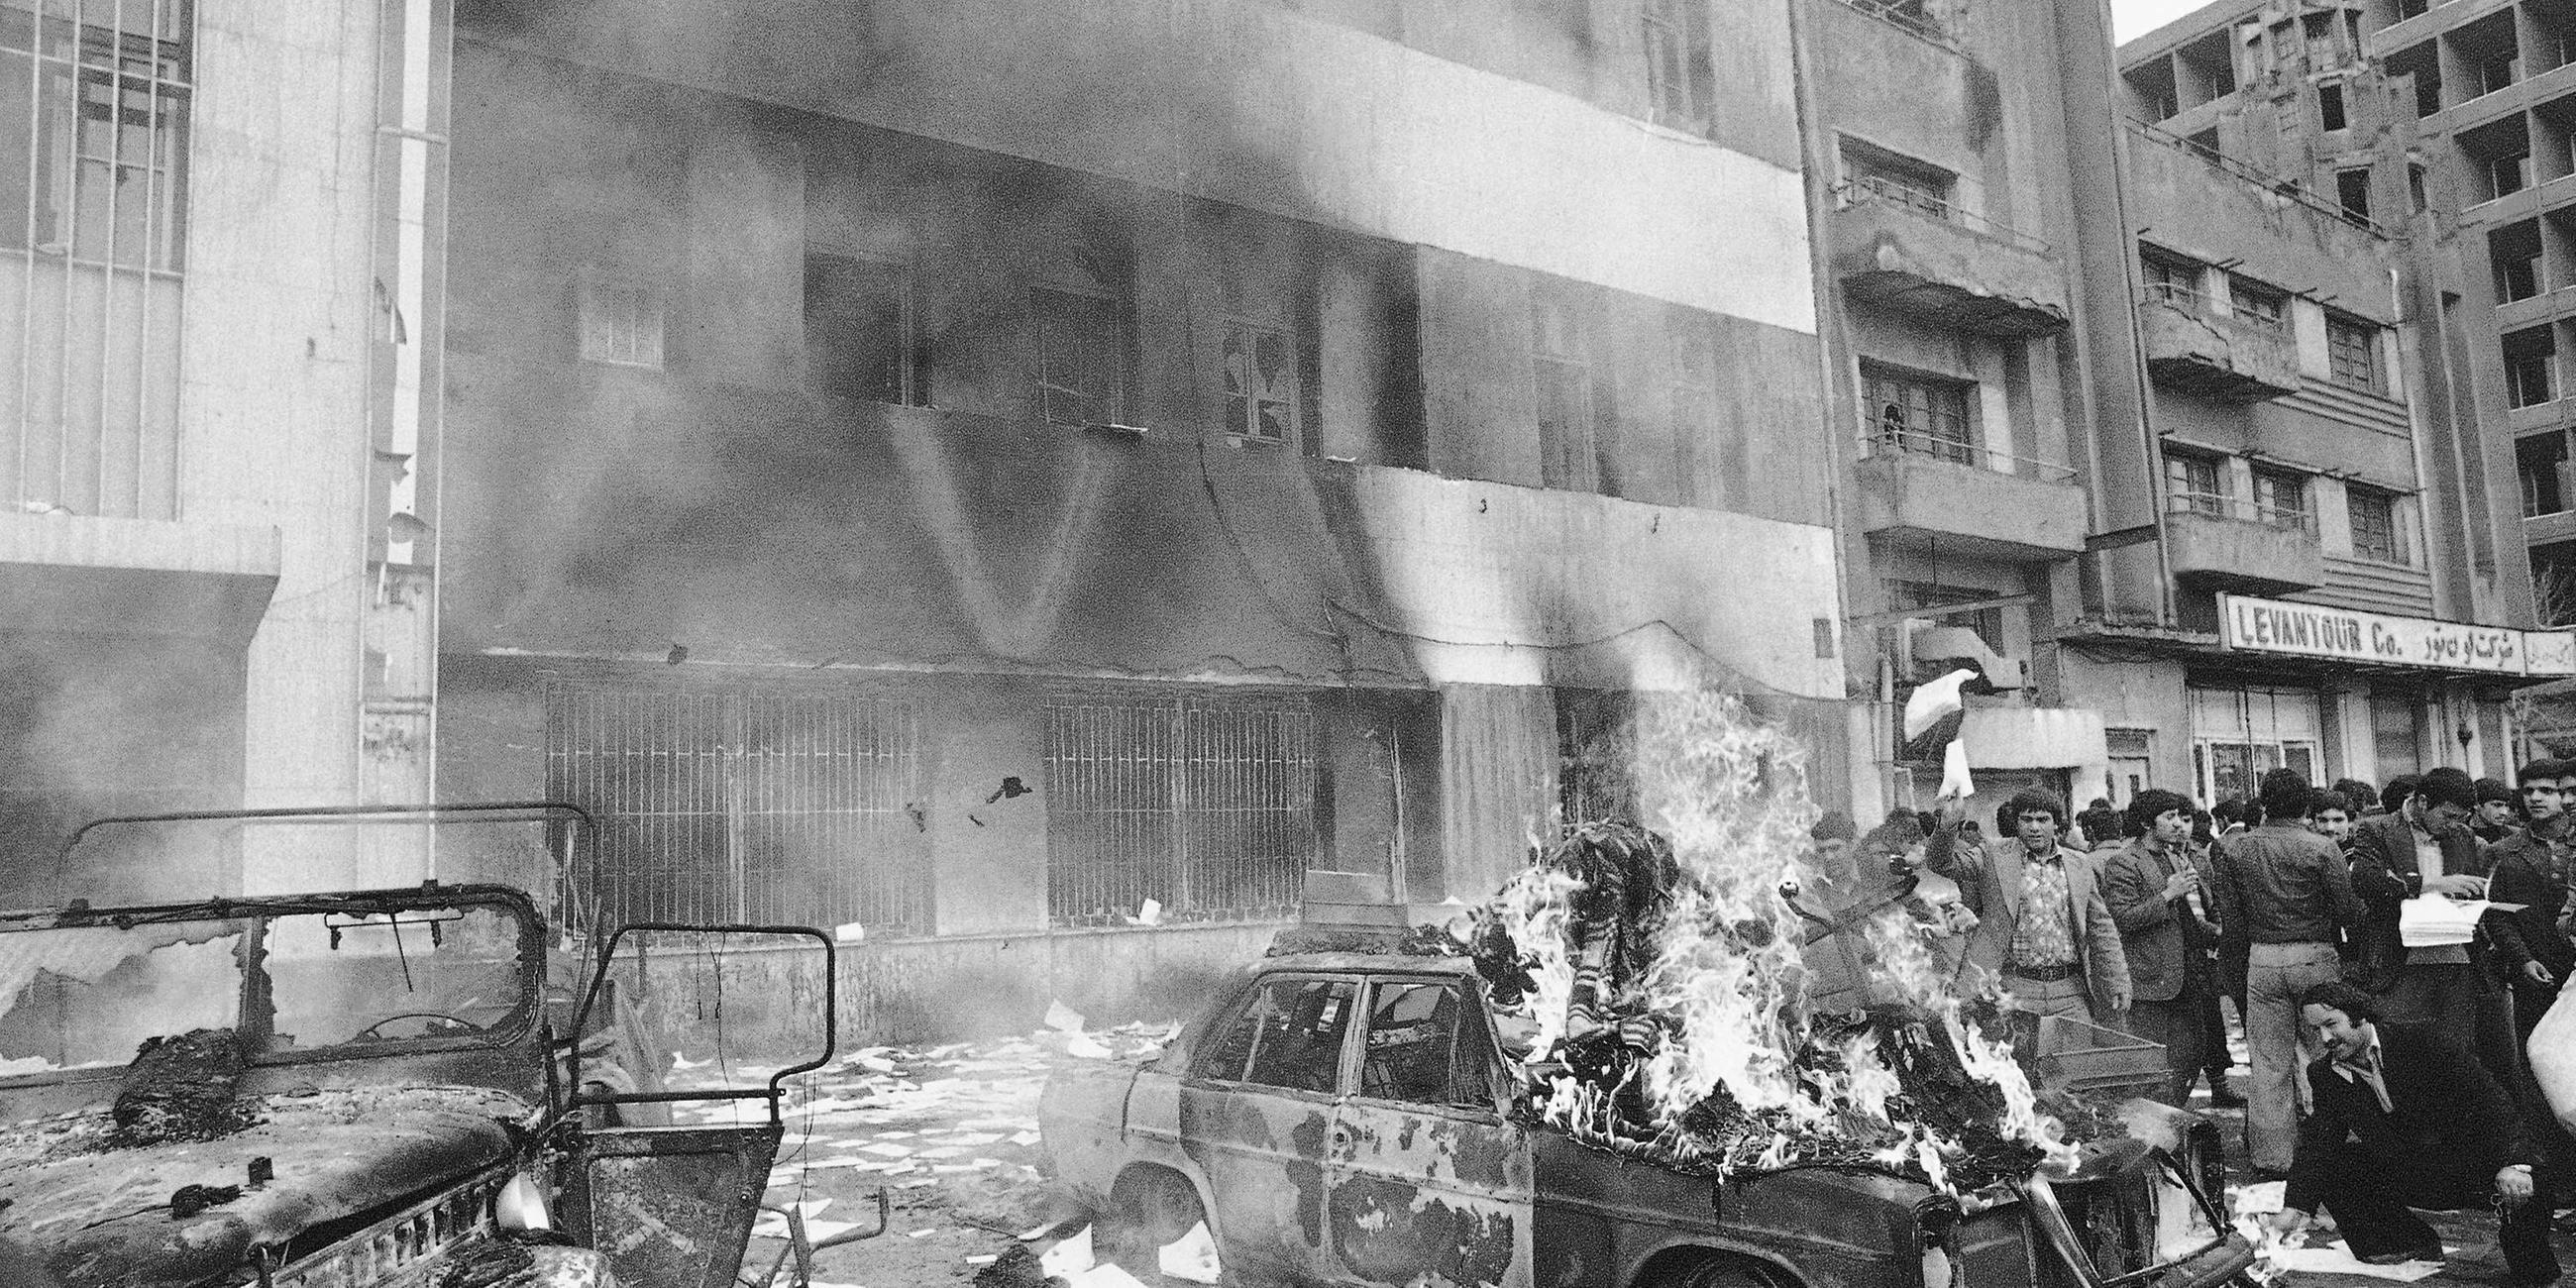 Februar 1979: Öffentliche Ordnung im Iran bricht zusammen / Verhaftungen und Hinrichtungen ehemaliger Politiker folgen